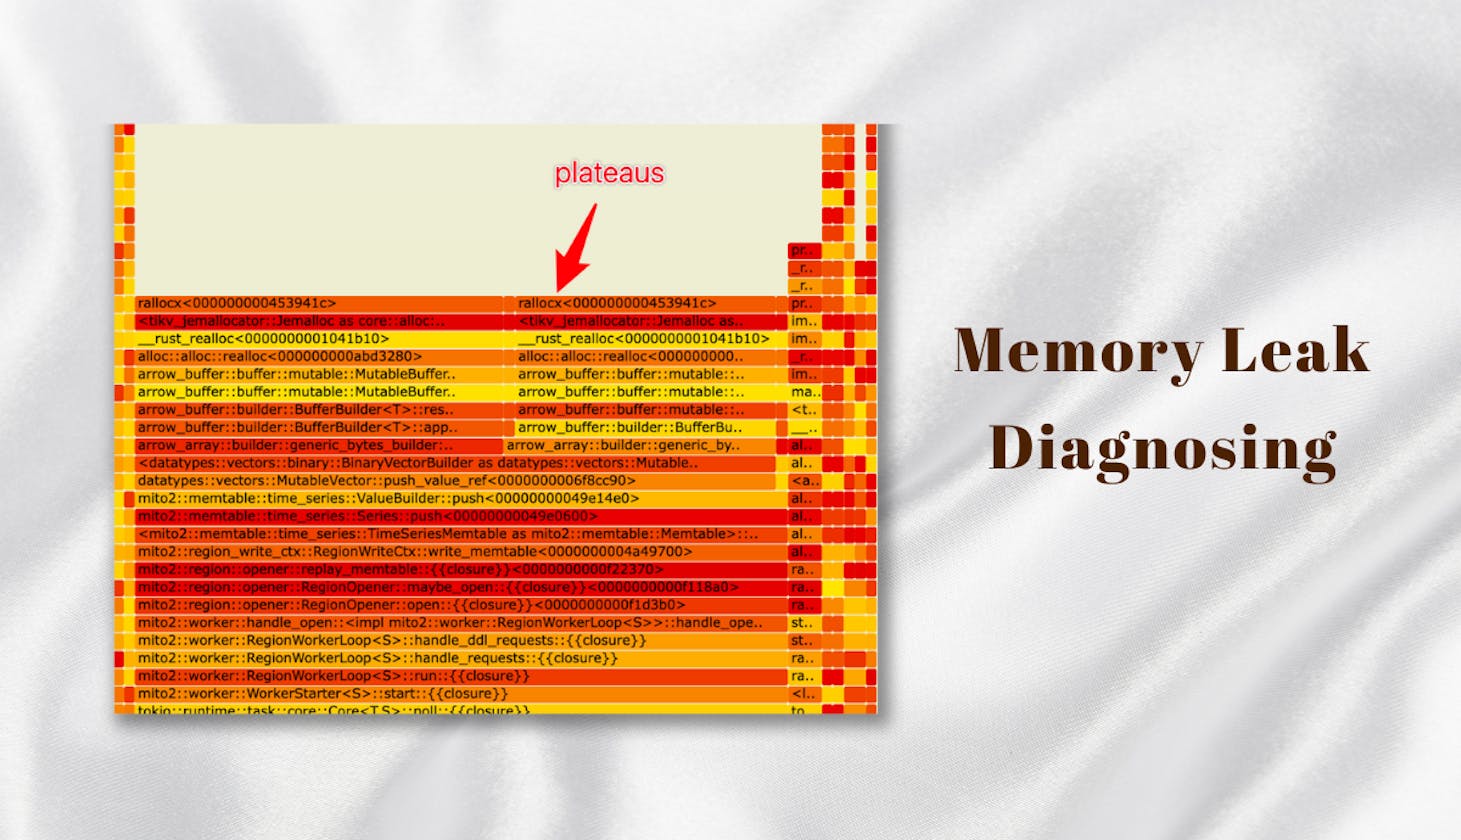 Memory Leak Diagnosing using Flame Graphs